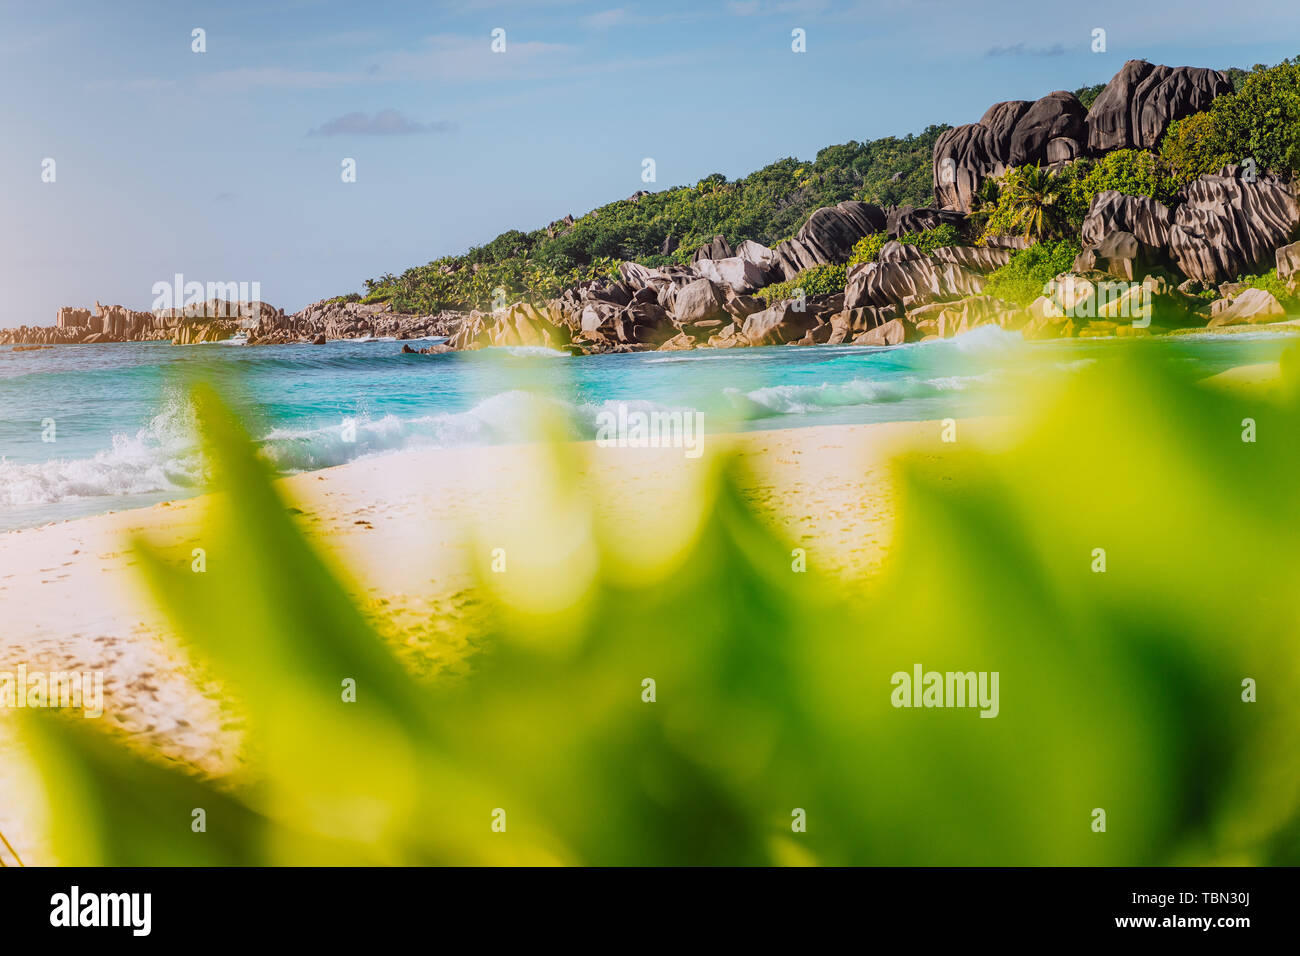 Grand Anse, La Digue island, Seychelles. Efecto de desenfoque de exuberante vegetación verde en primer plano y hermoso paraíso de arena blanca playa con olas y turquesa Foto de stock